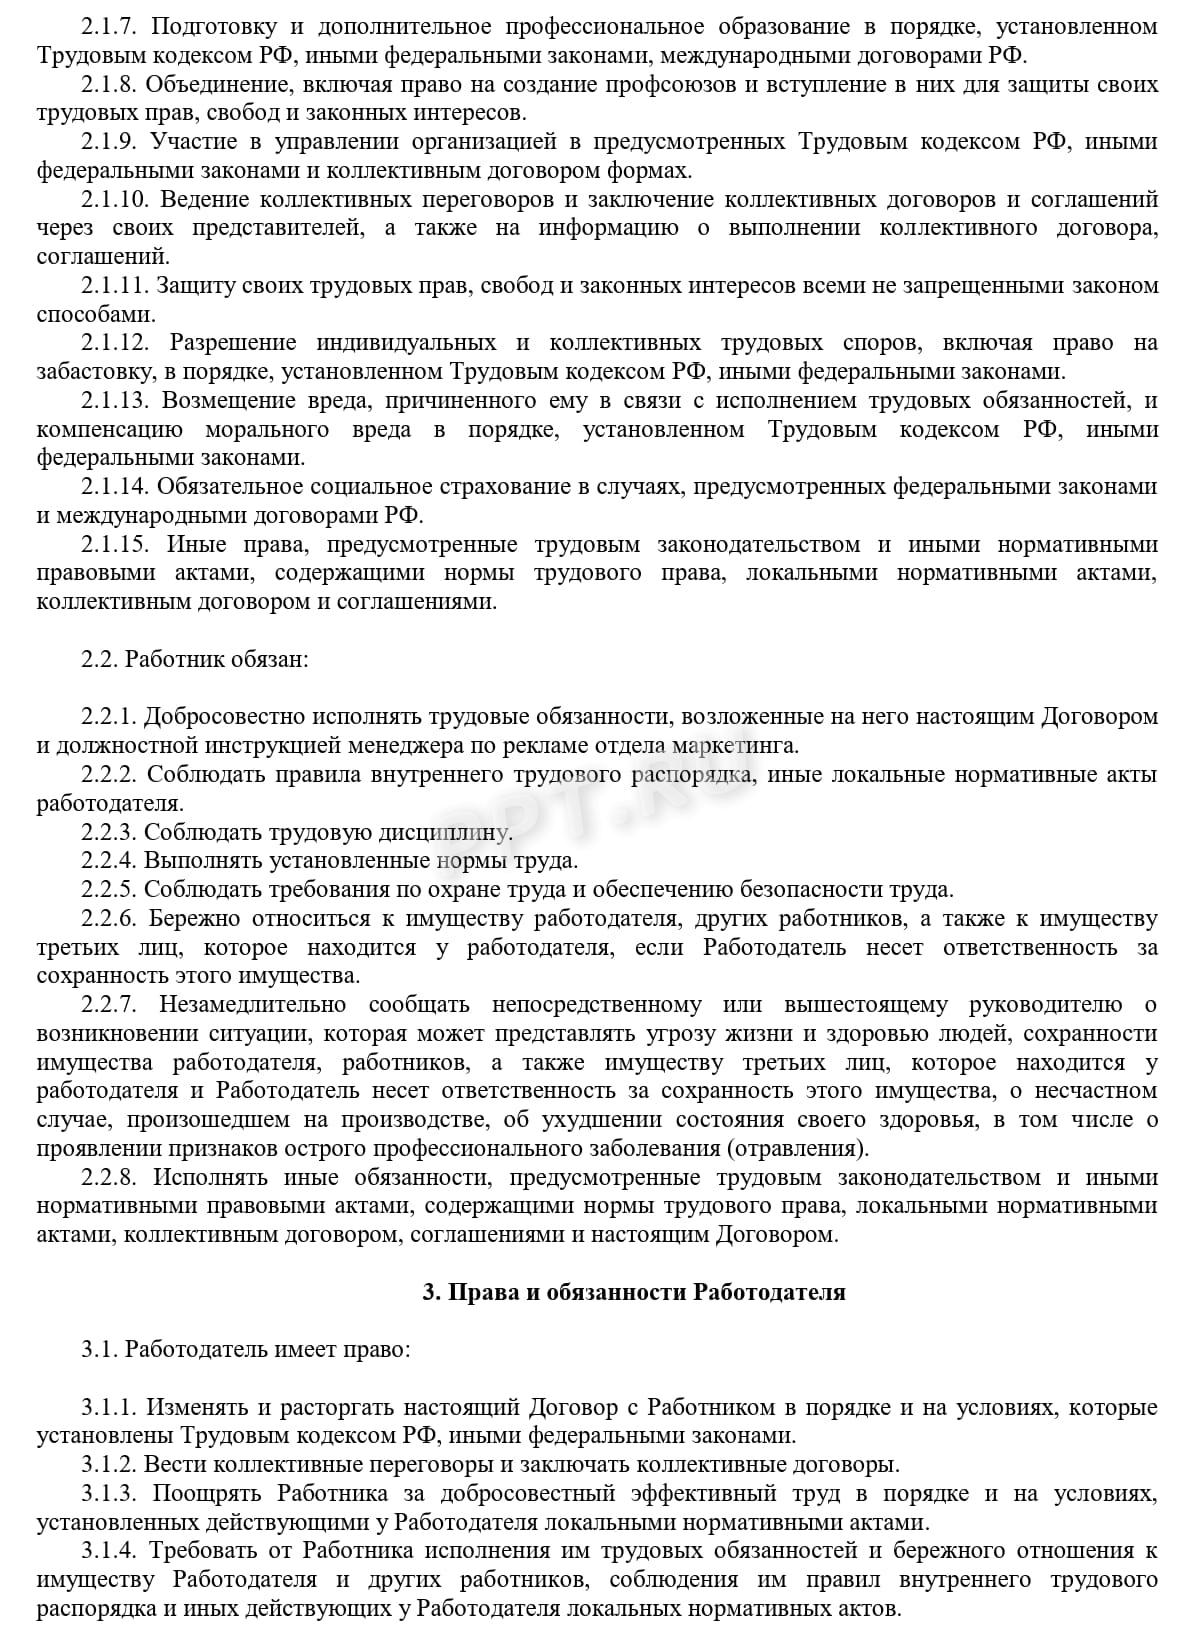 Образец трудового договора с киргизом, стр. 2